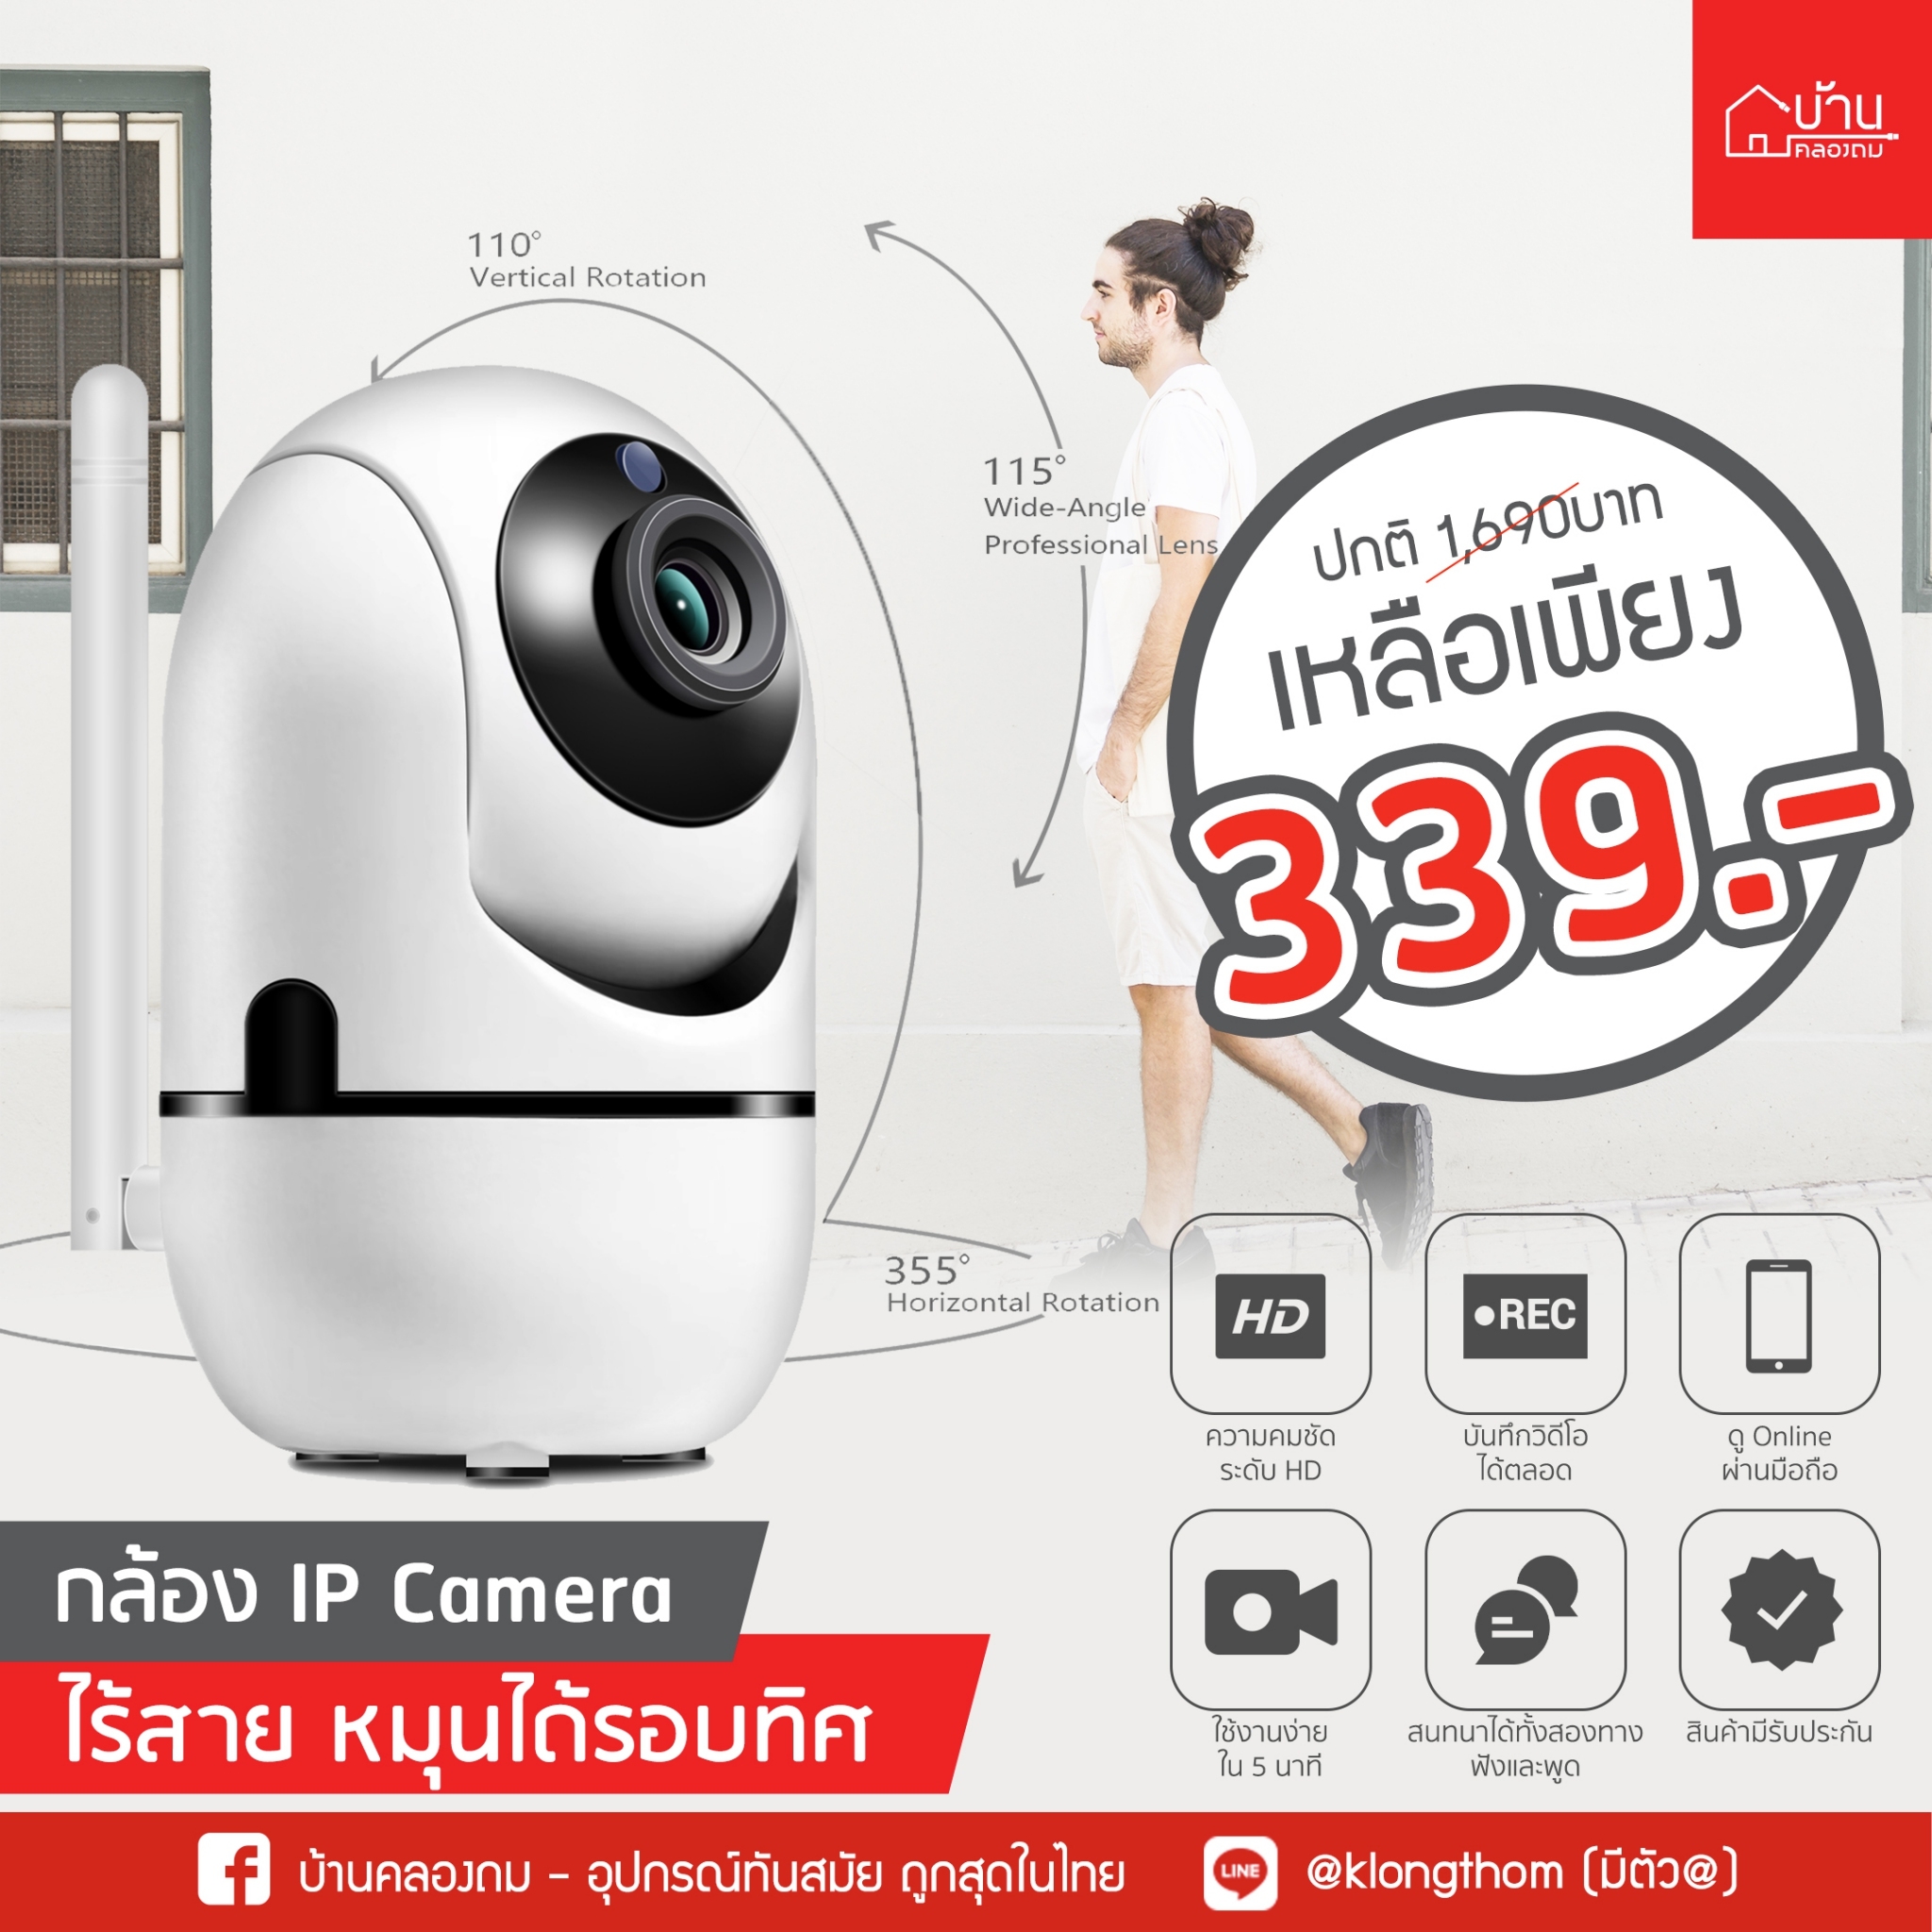 กล้อง IP Camera S1 ลดเหลือ 339 บาท กล้องวงจรปิด กล้องไร้สาย กล้องในบ้าน บ้านคลองถม IP cam กล้องIPCamera หมุนรอบทิศ